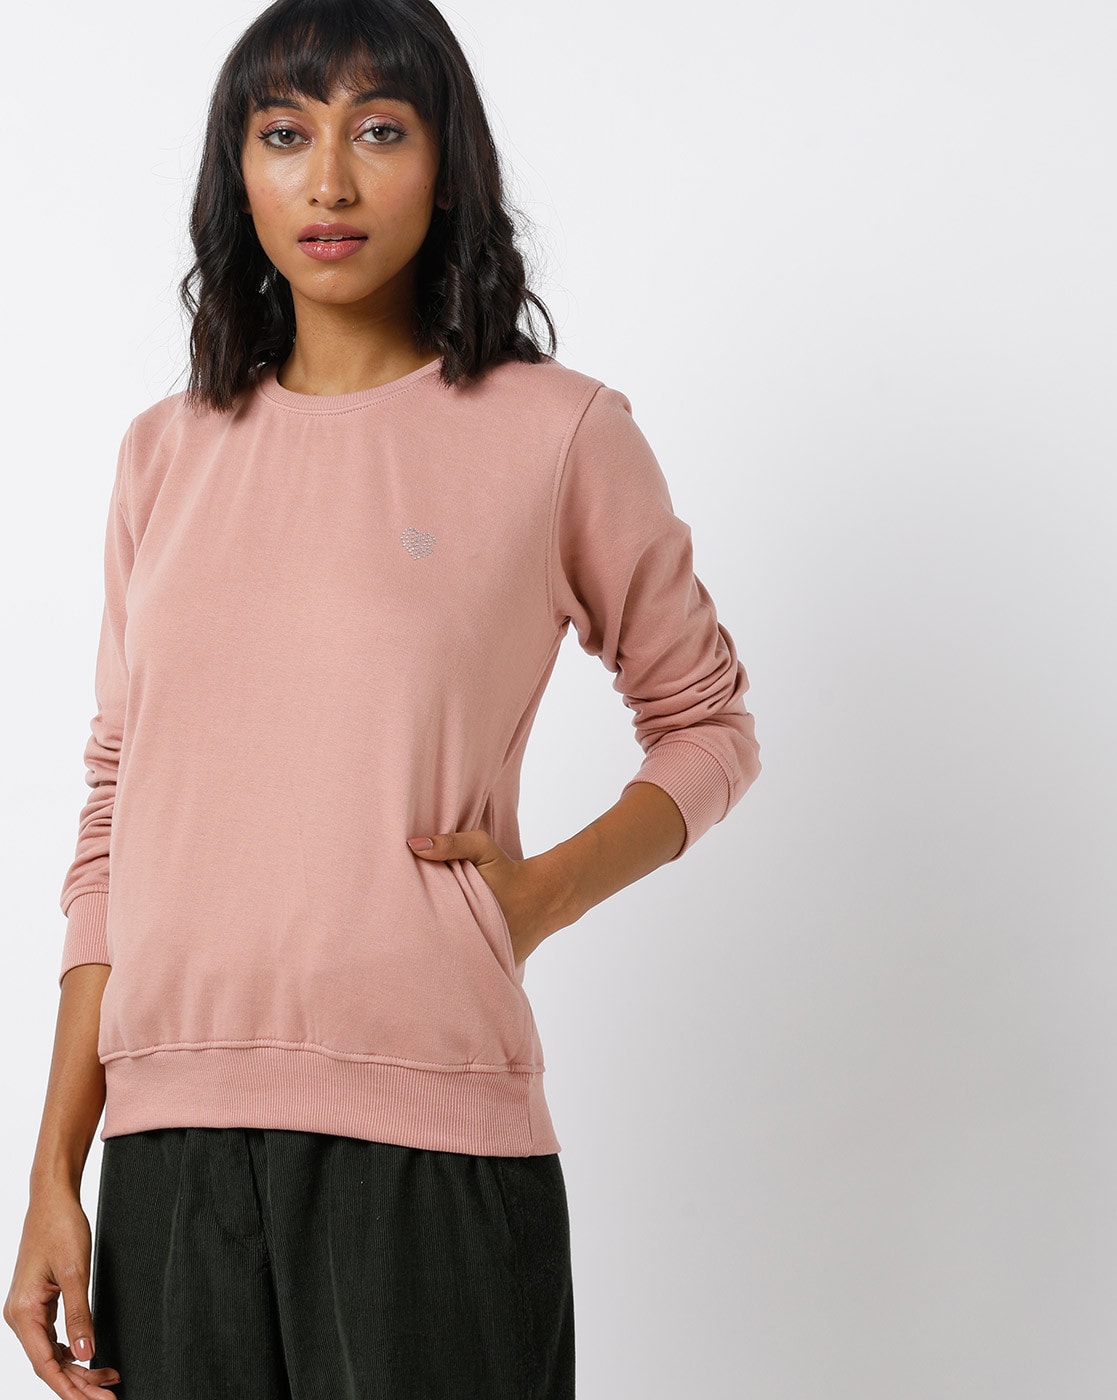 rose pink sweatshirt